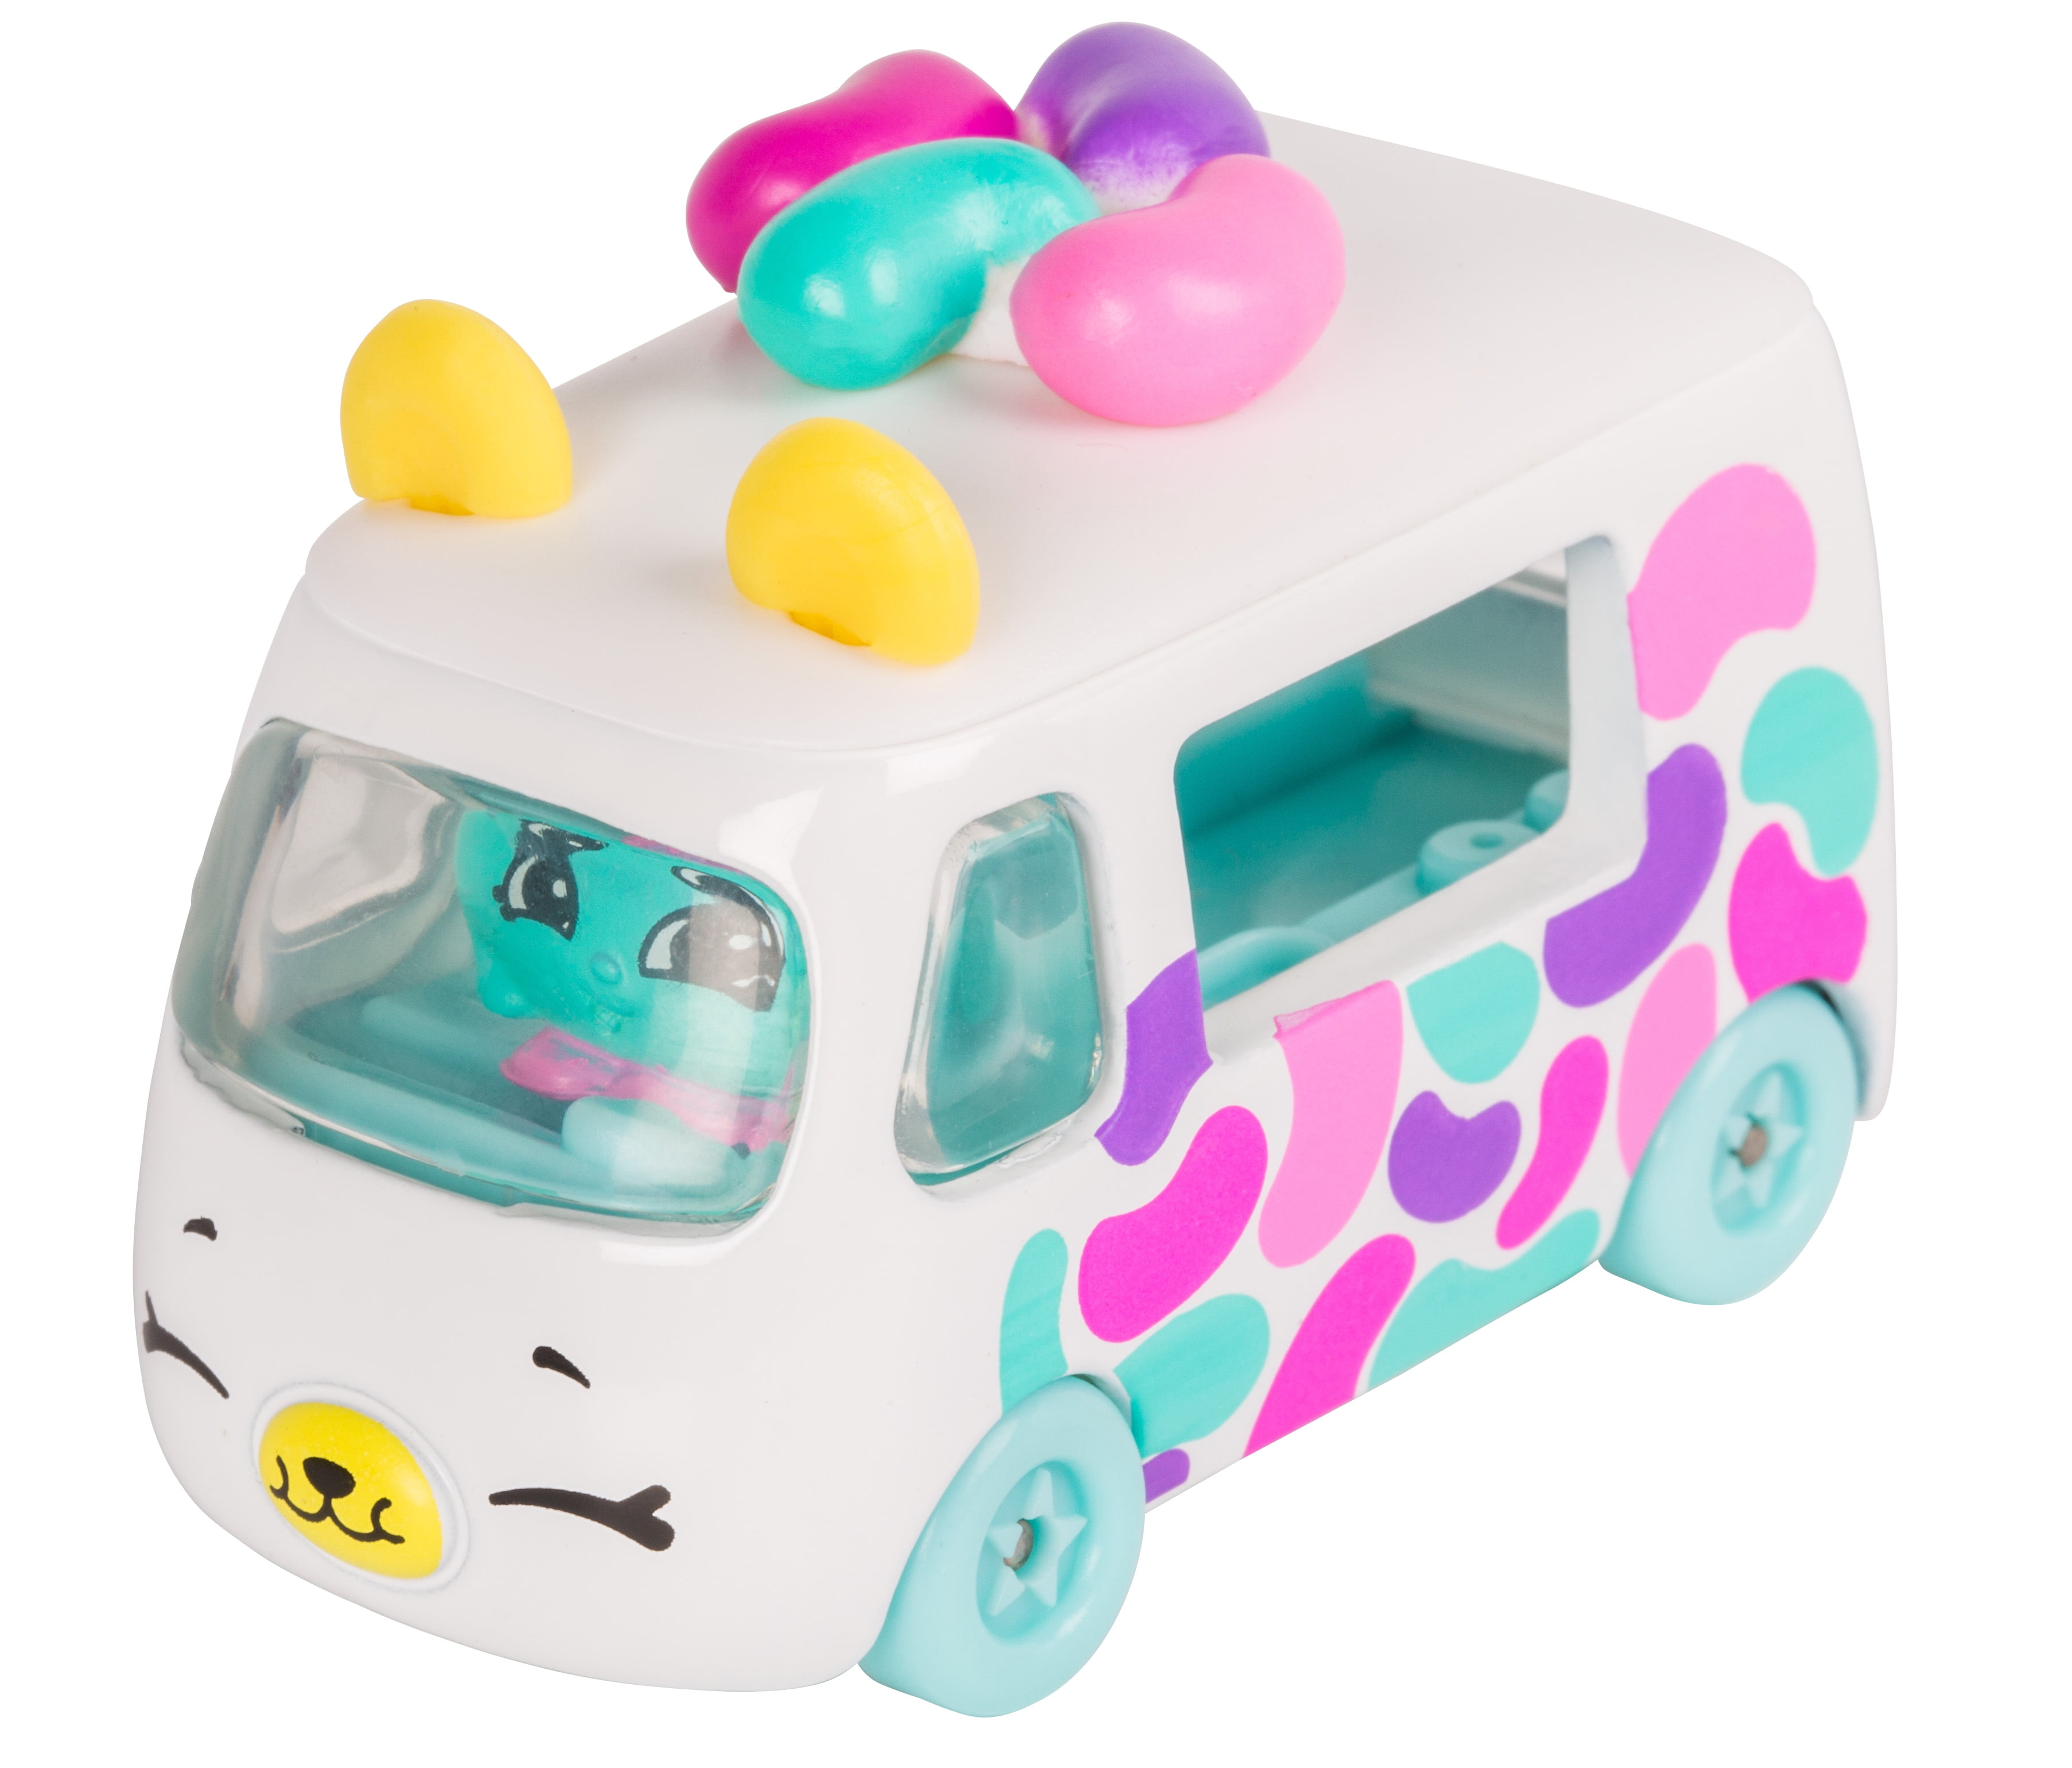 Shopkins Cutie Cars - Wheely Musical Diecast QT3-14